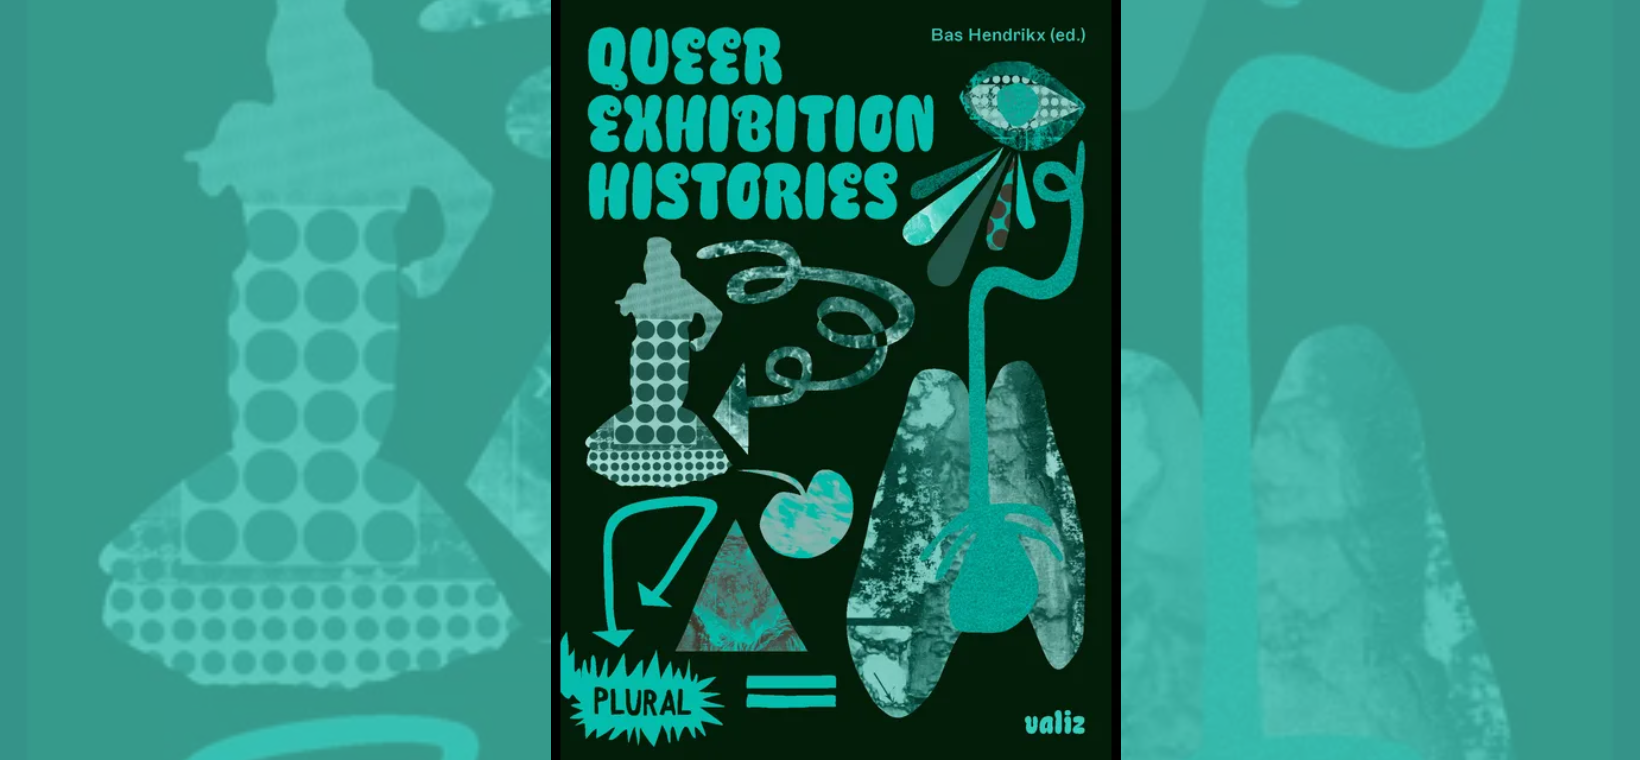 Op de foto is de cover van het boek Queer Exhibition Histories te zien. Het heeft een zwarte achtergrond met groene letters en symbolen.